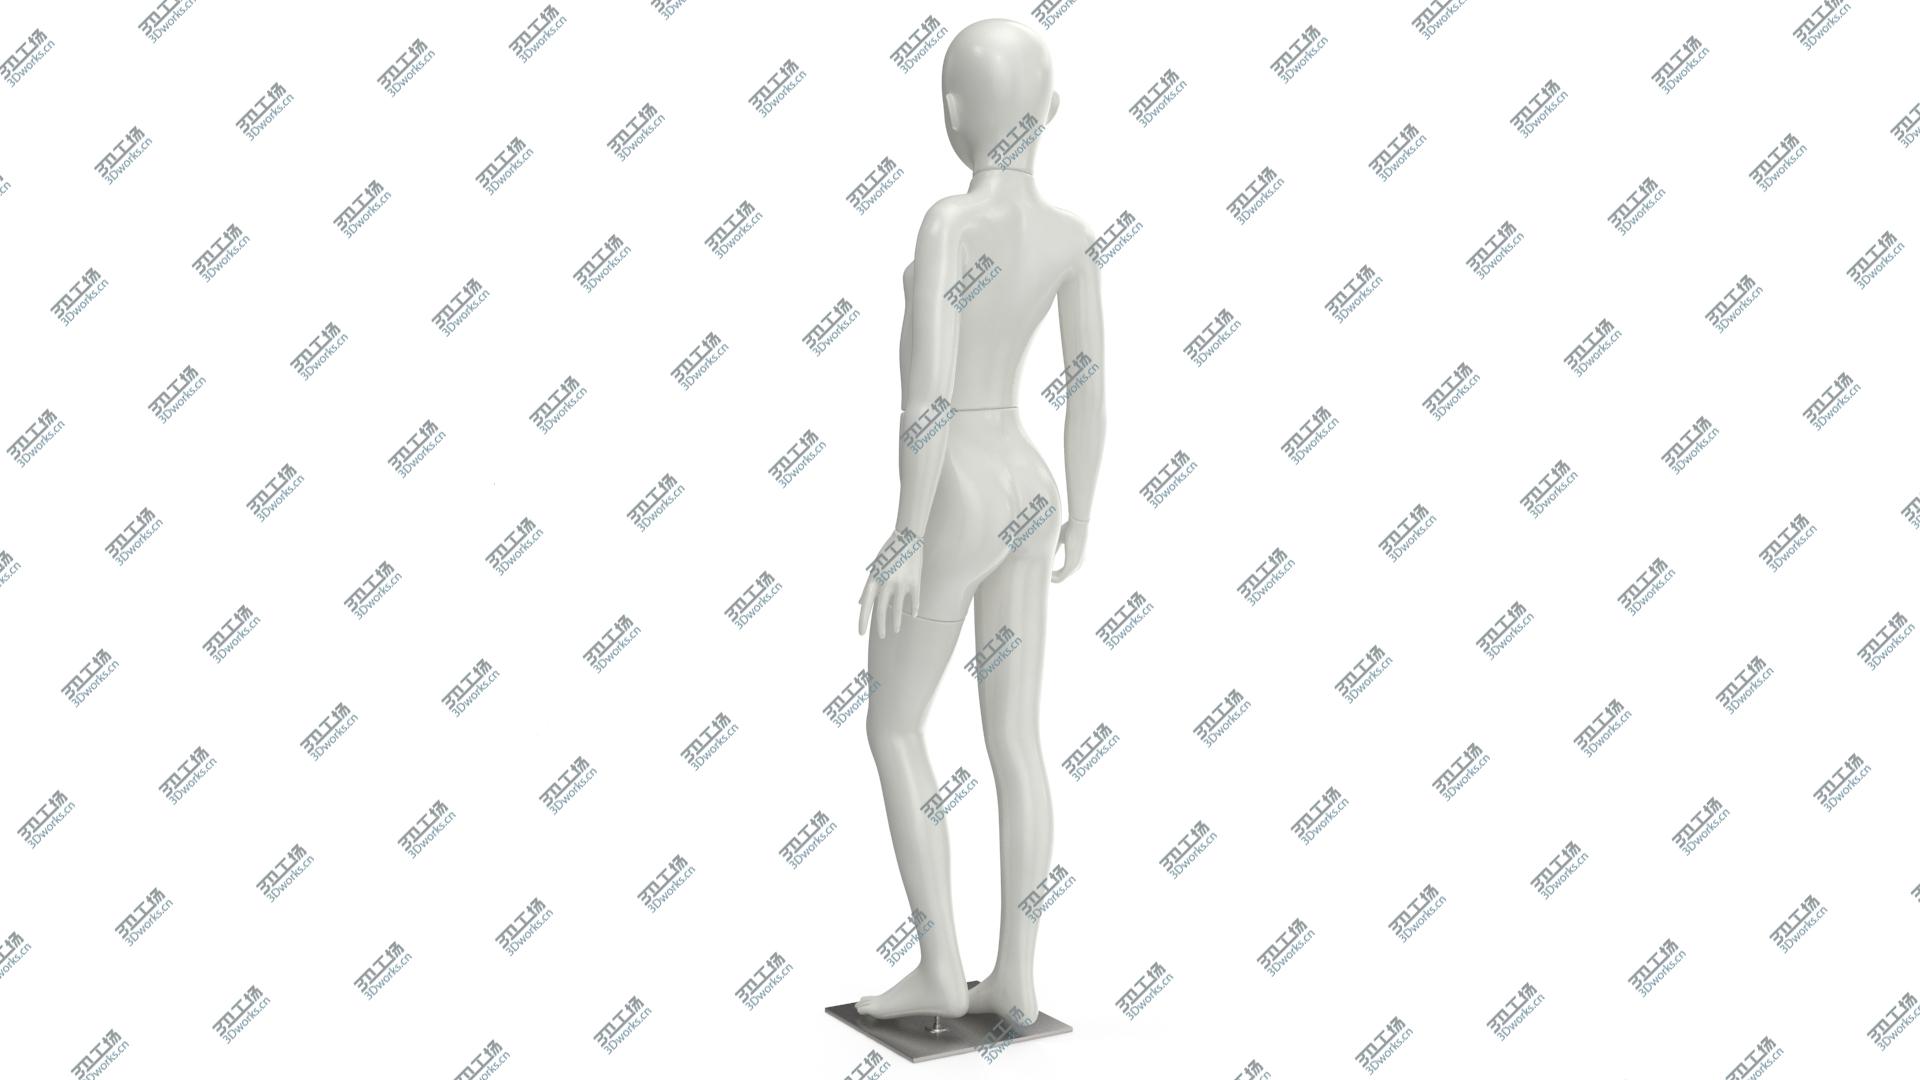 images/goods_img/2021040162/Girl Mannequin 3D model/5.jpg